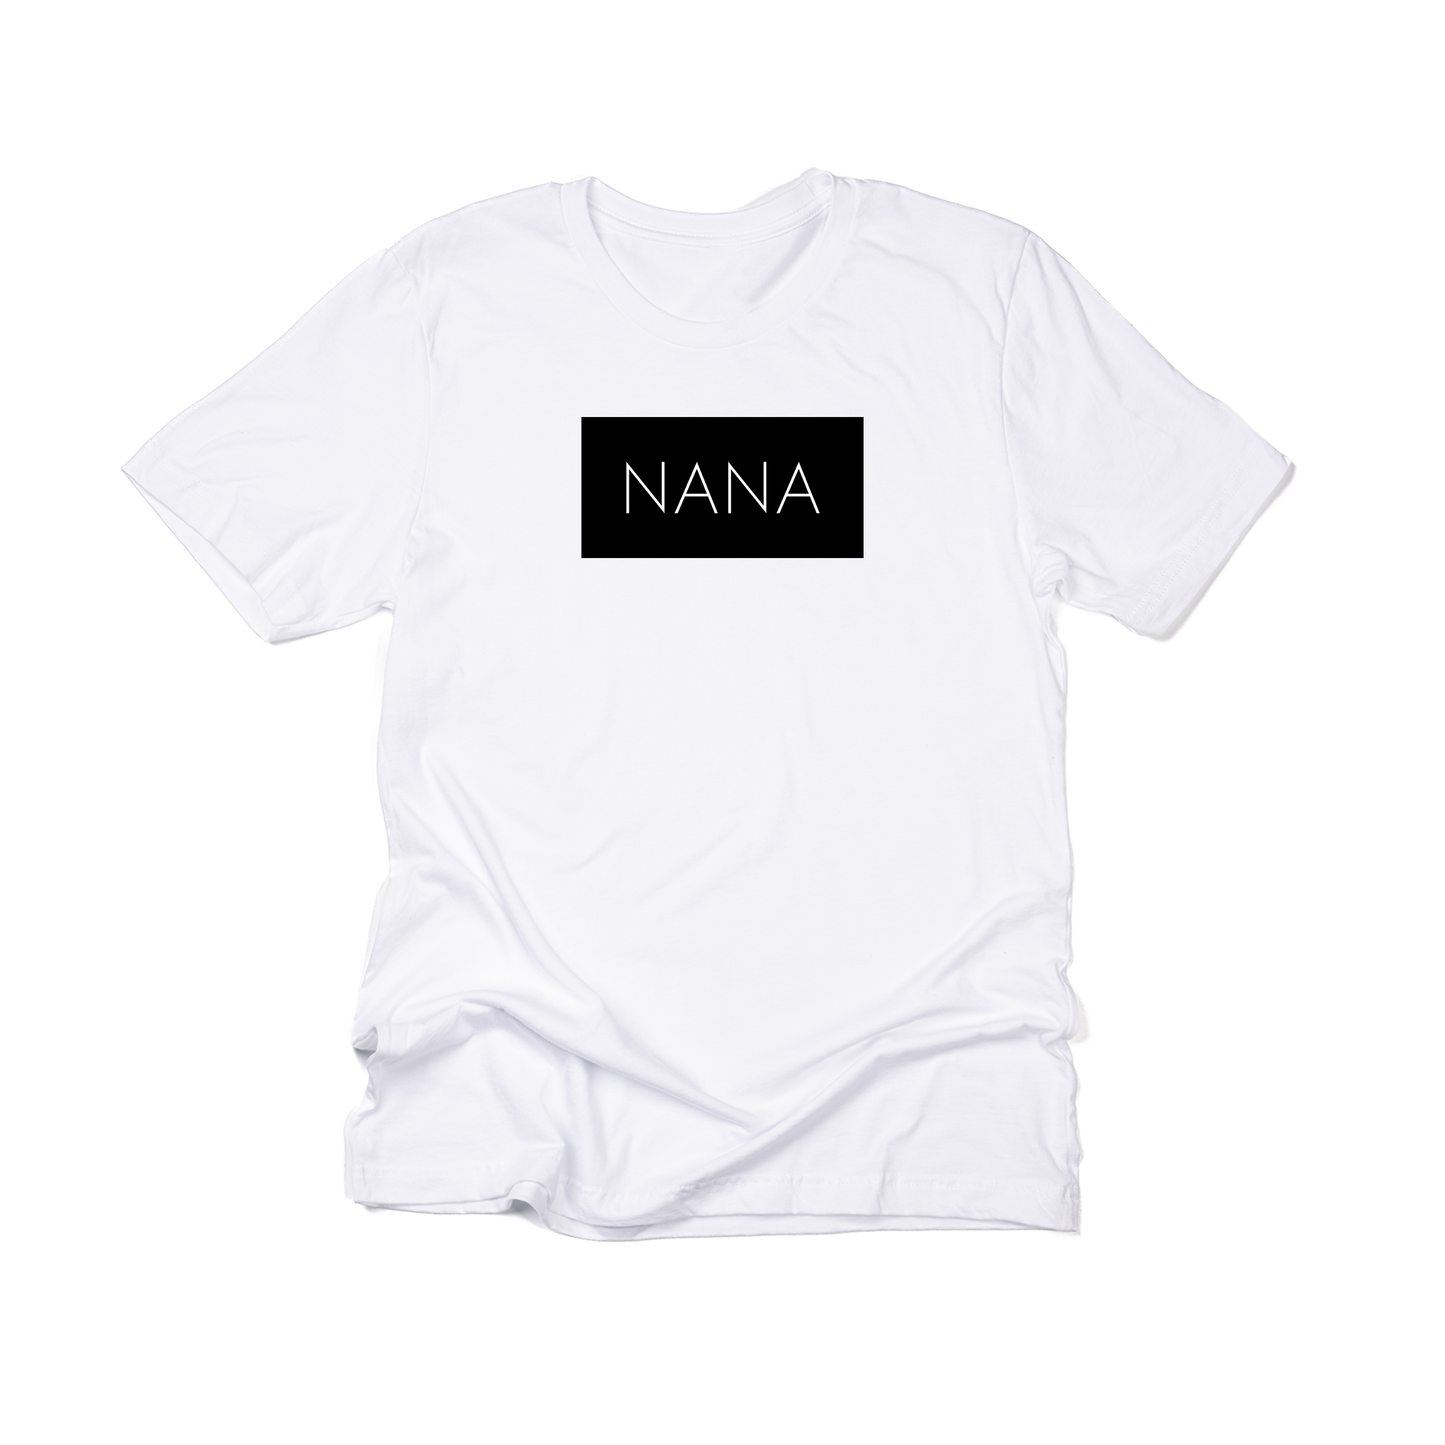 Nana (Boxed Collection, Black Box/White Text) - Tee (White)